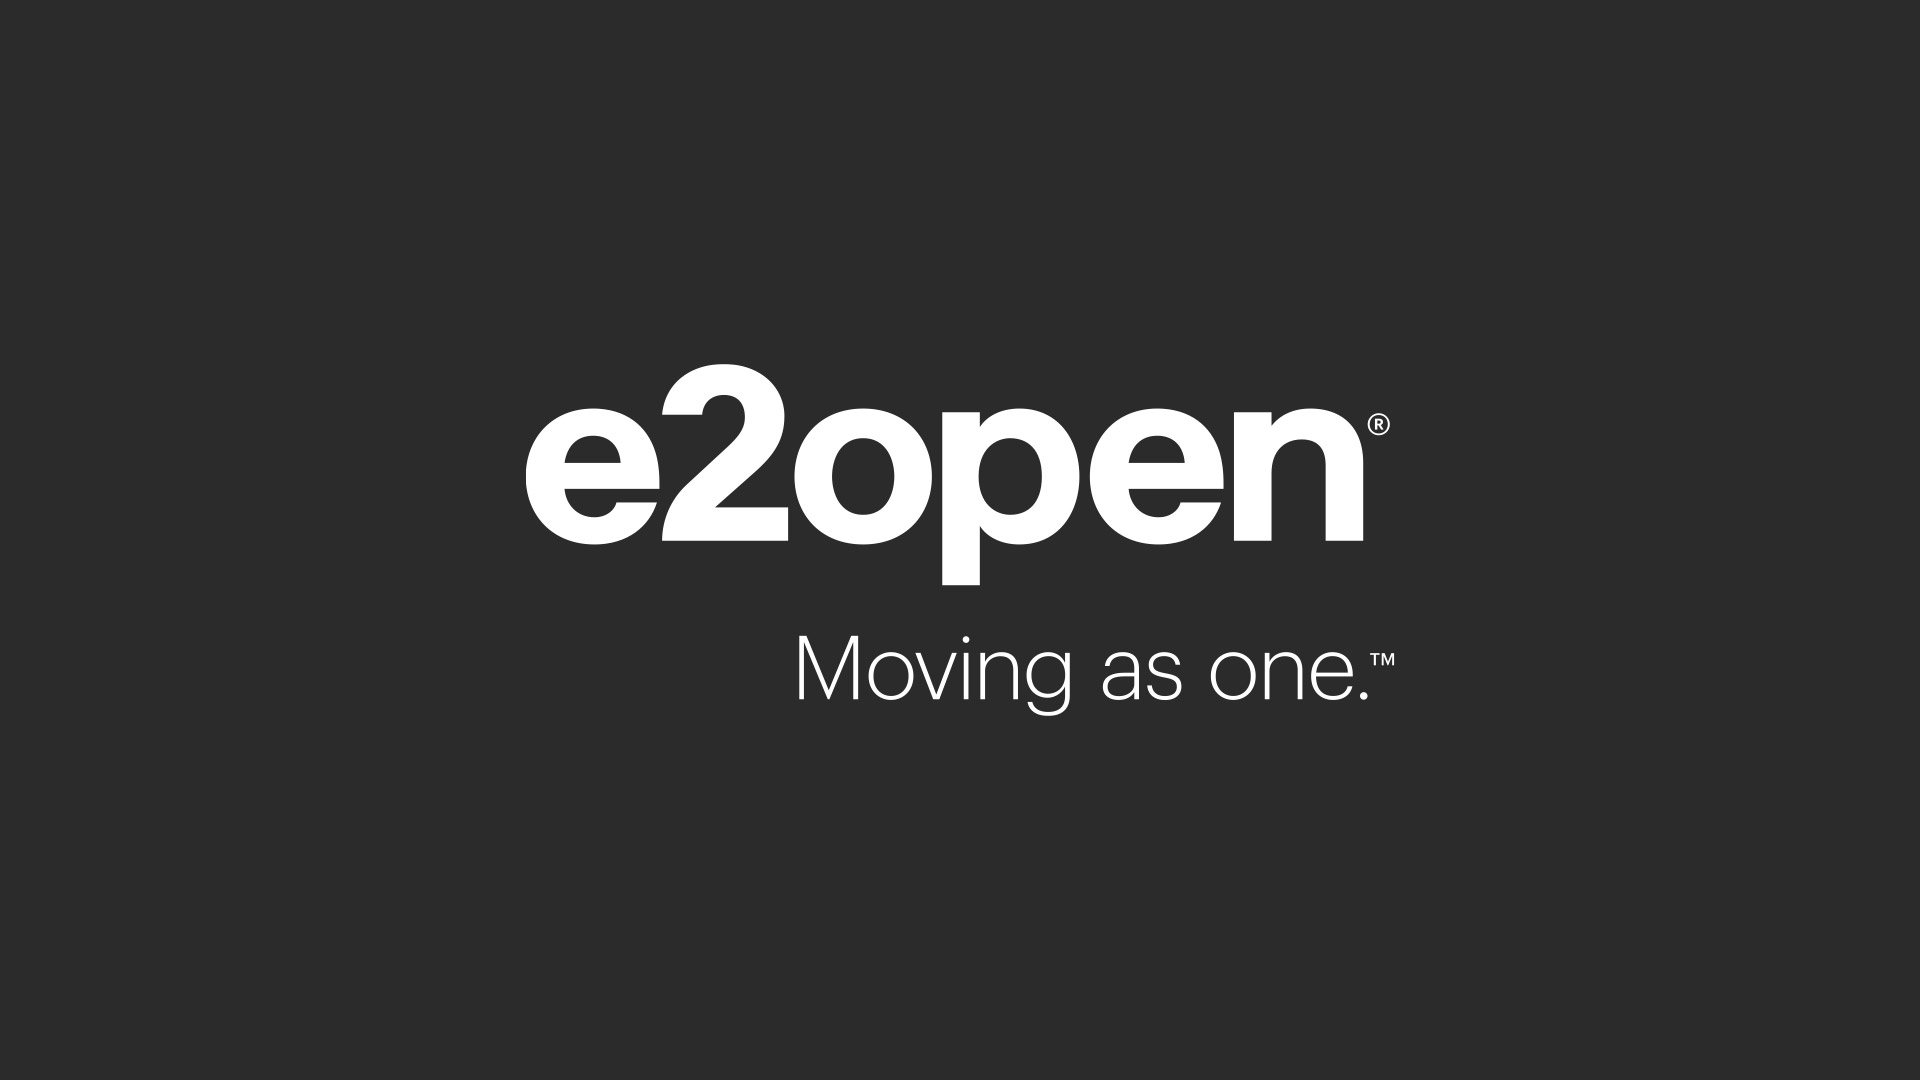 e2open brand image